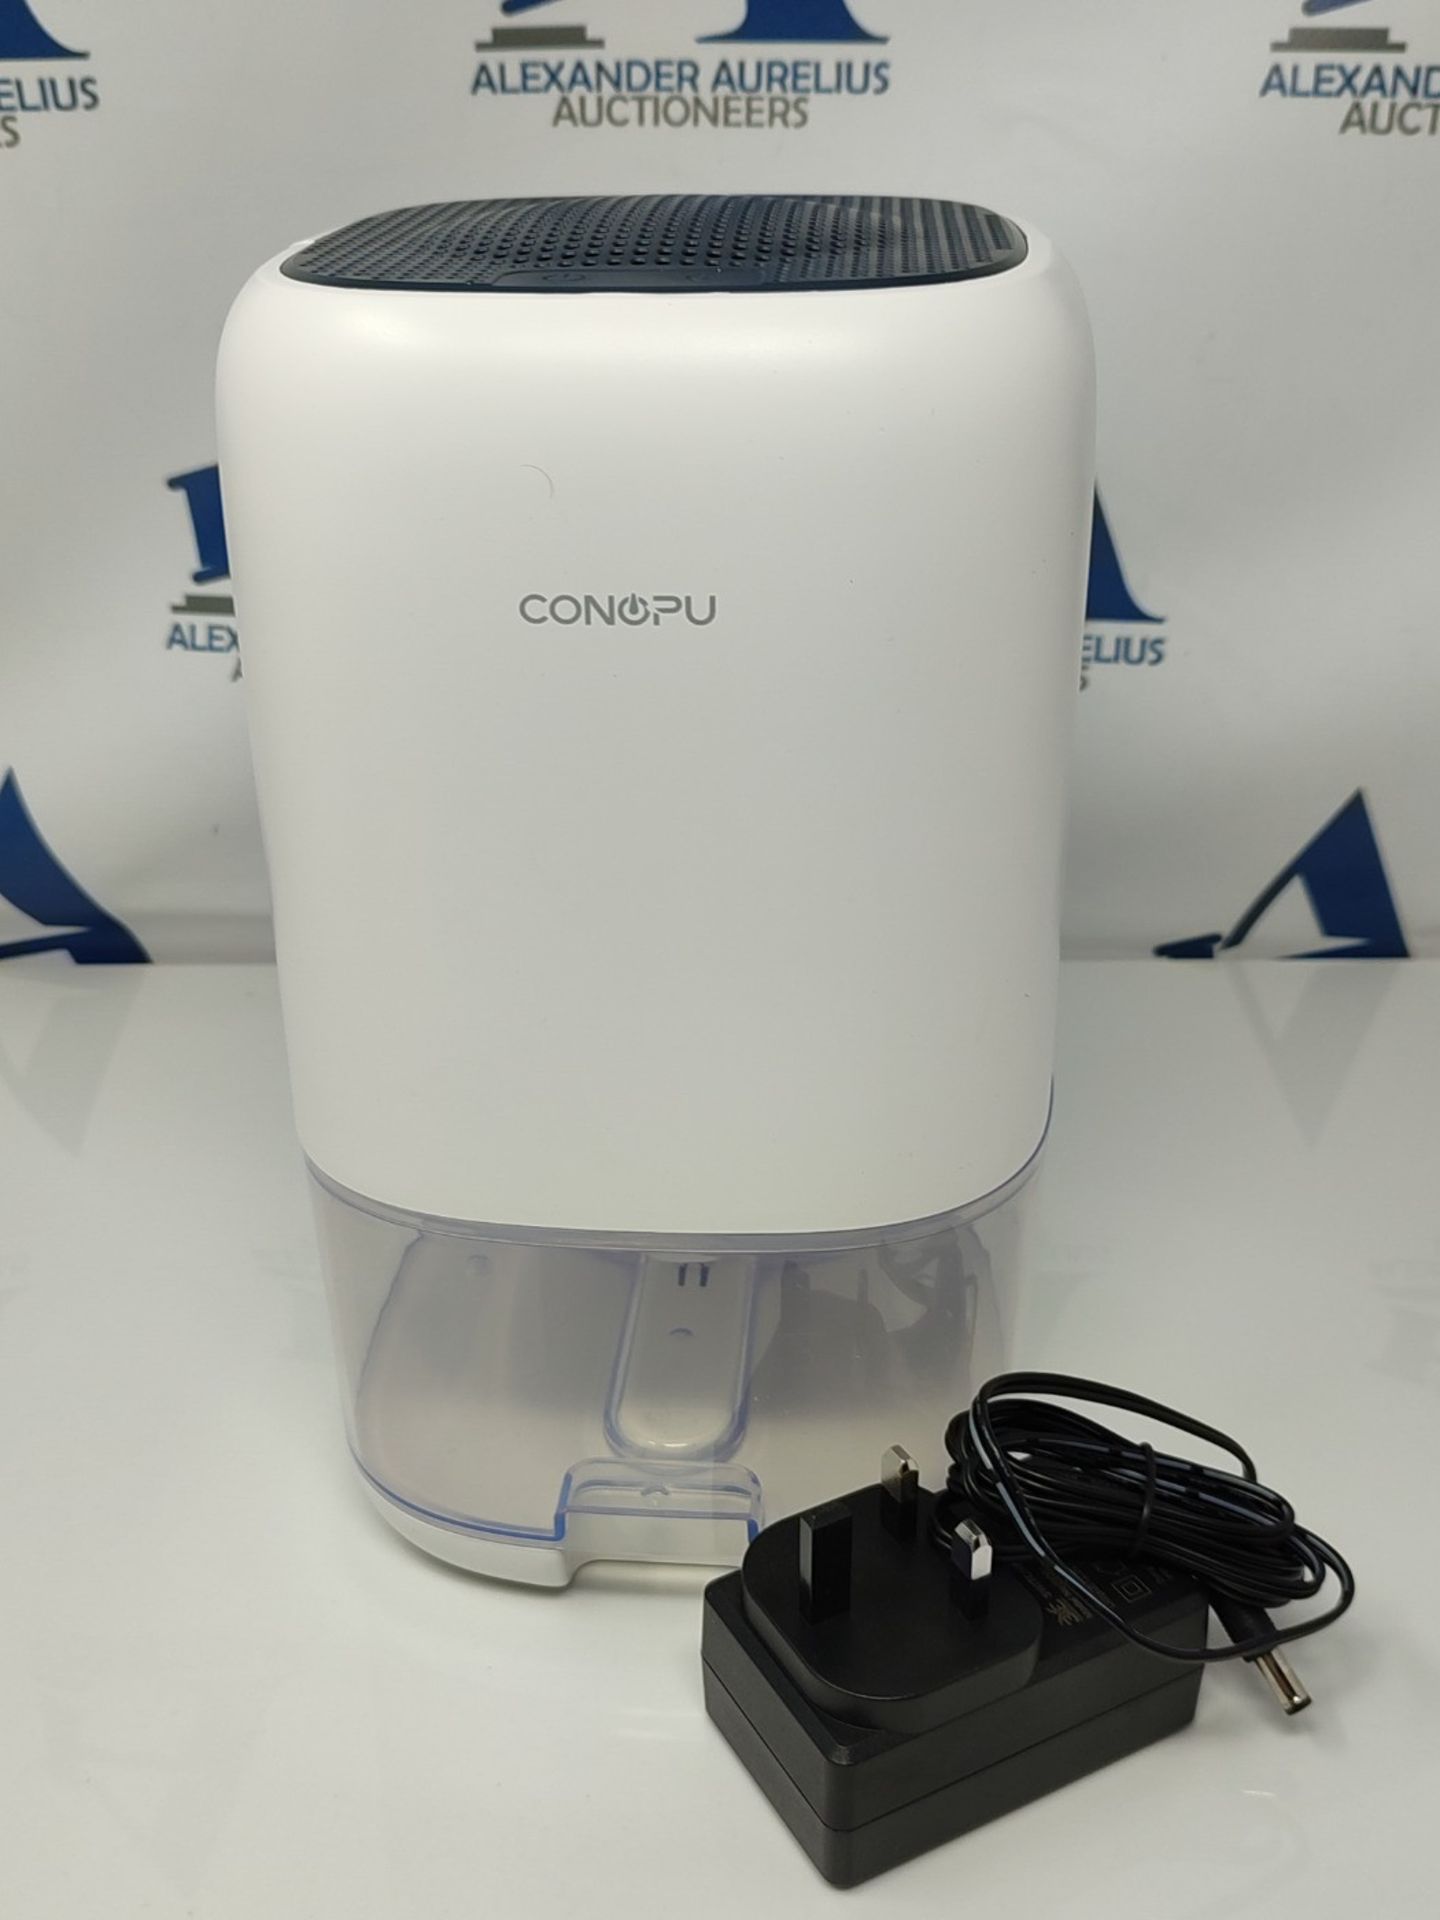 CONOPU Dehumidifier 1000ml, Dehumidifiers for Home, Auto Off&Coloured LED Light, Pelti - Image 2 of 2